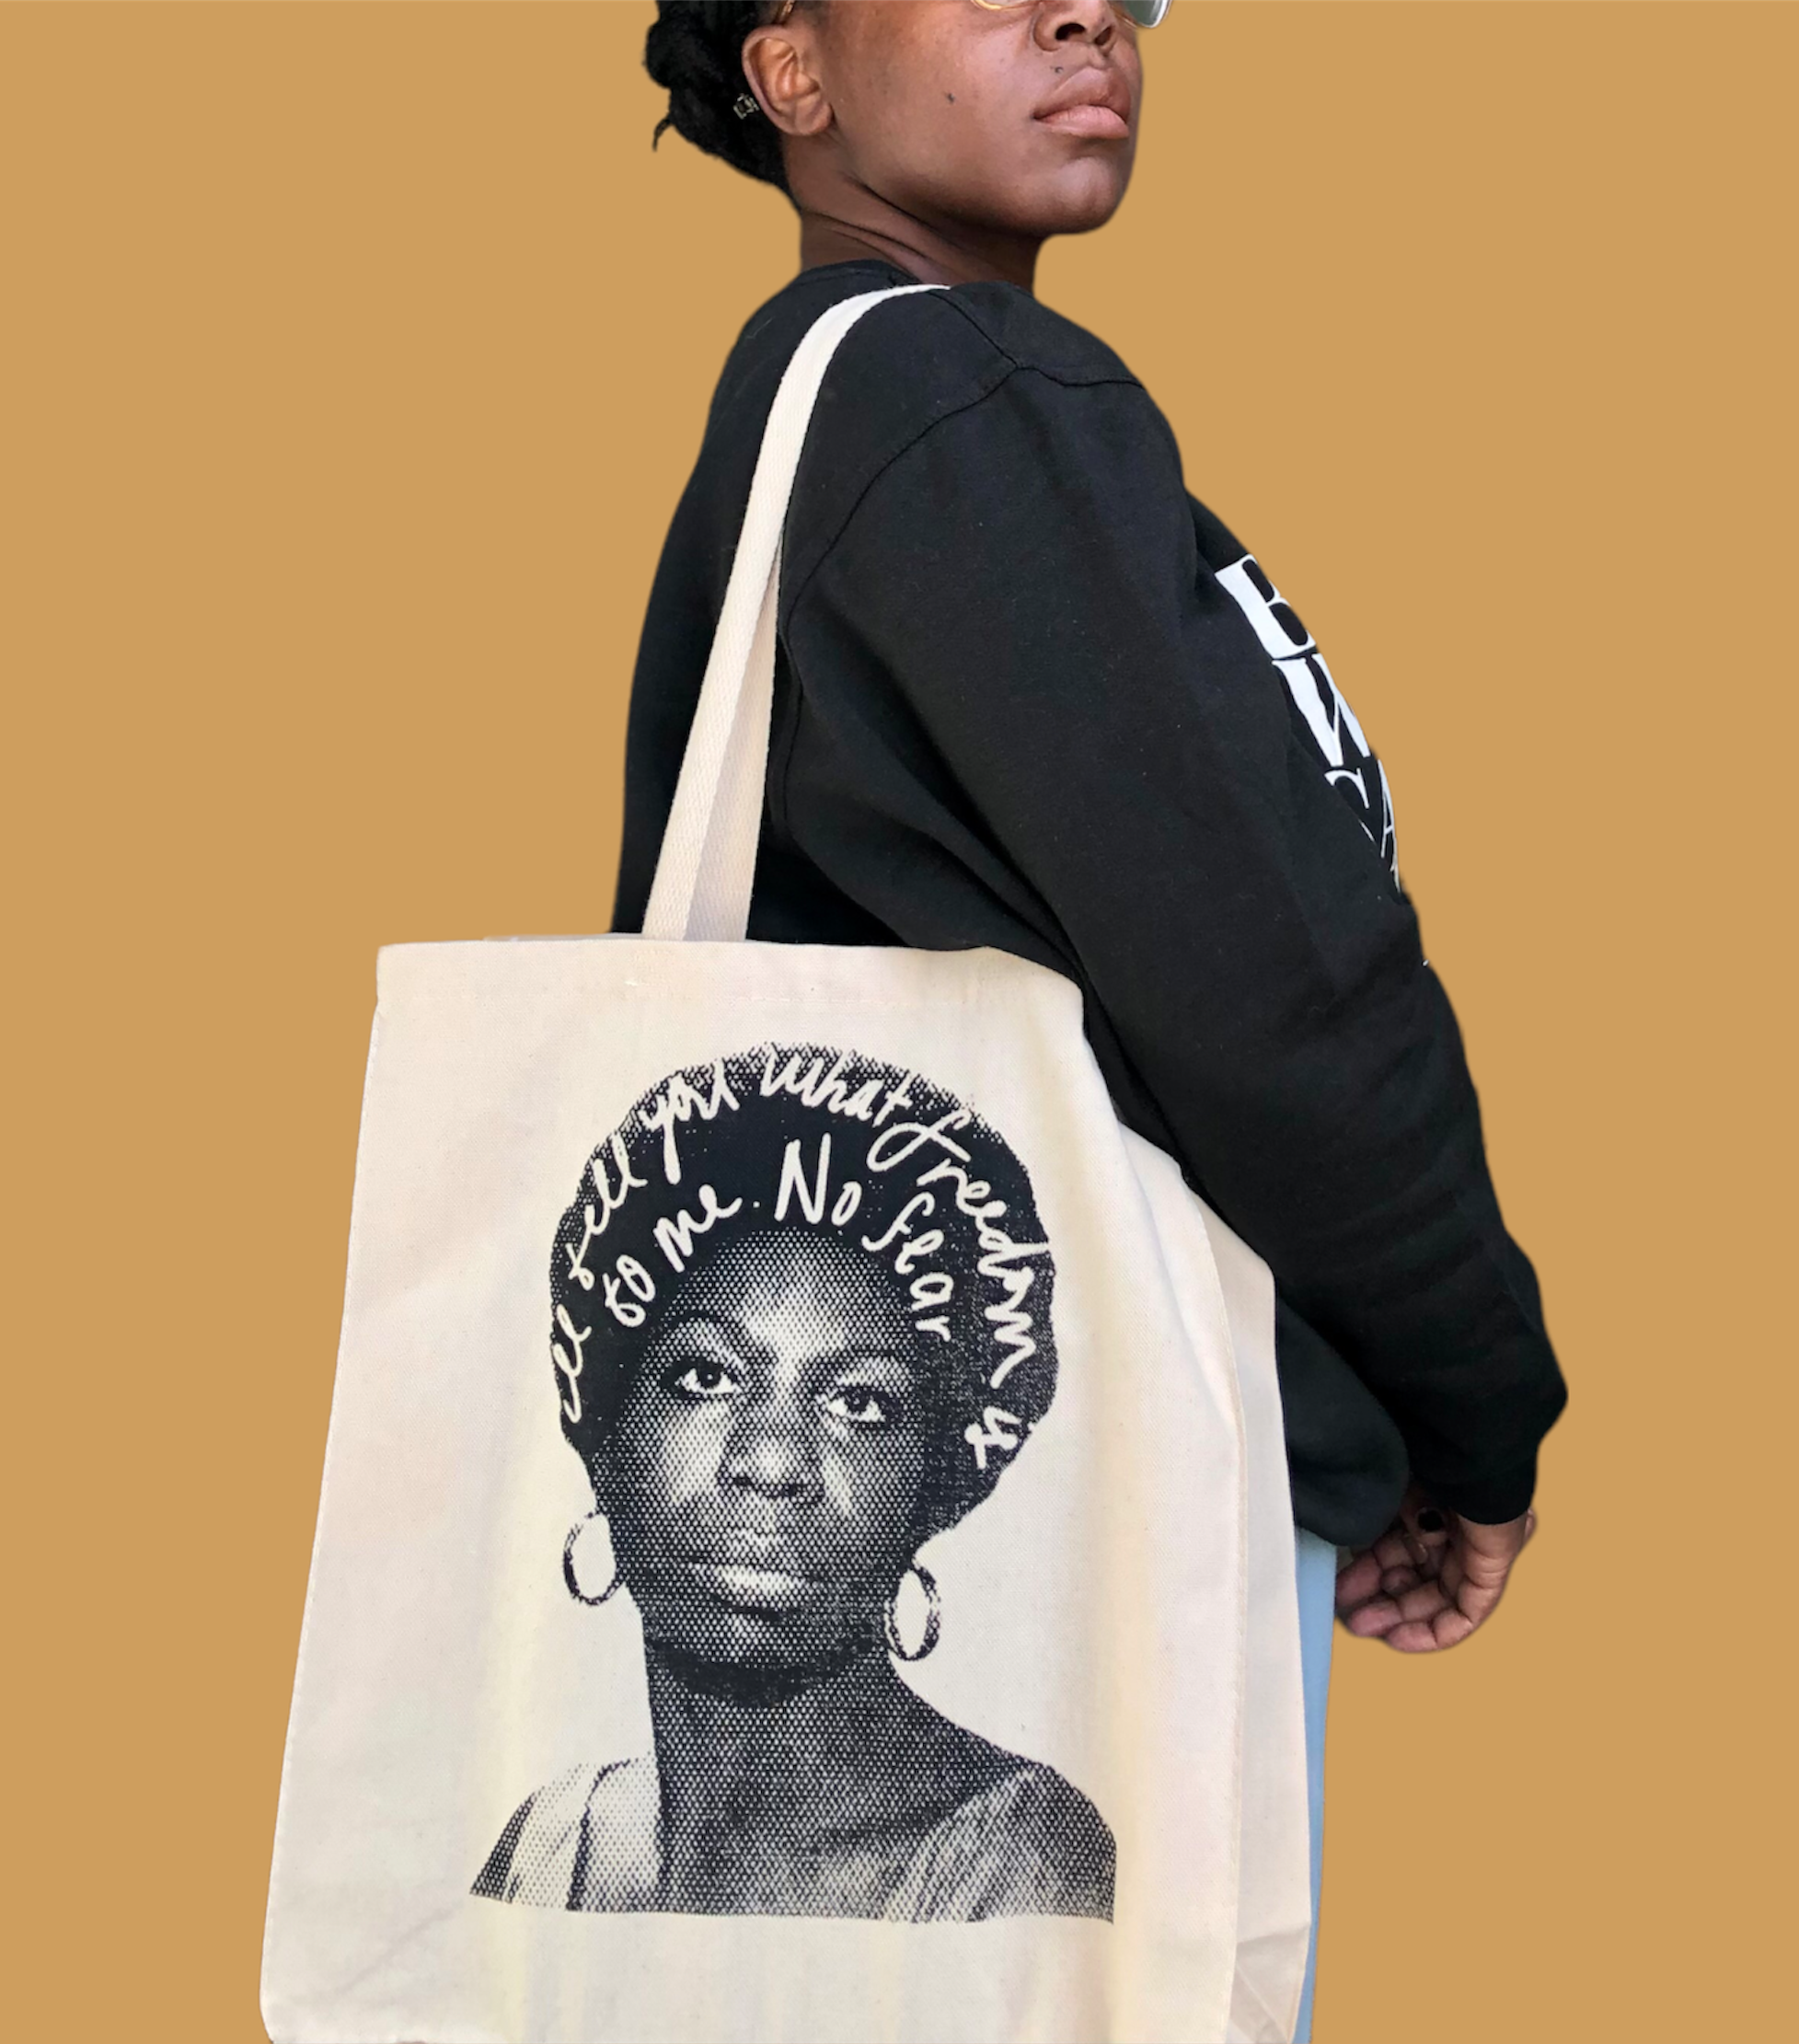 Nina Simone Tote Bag